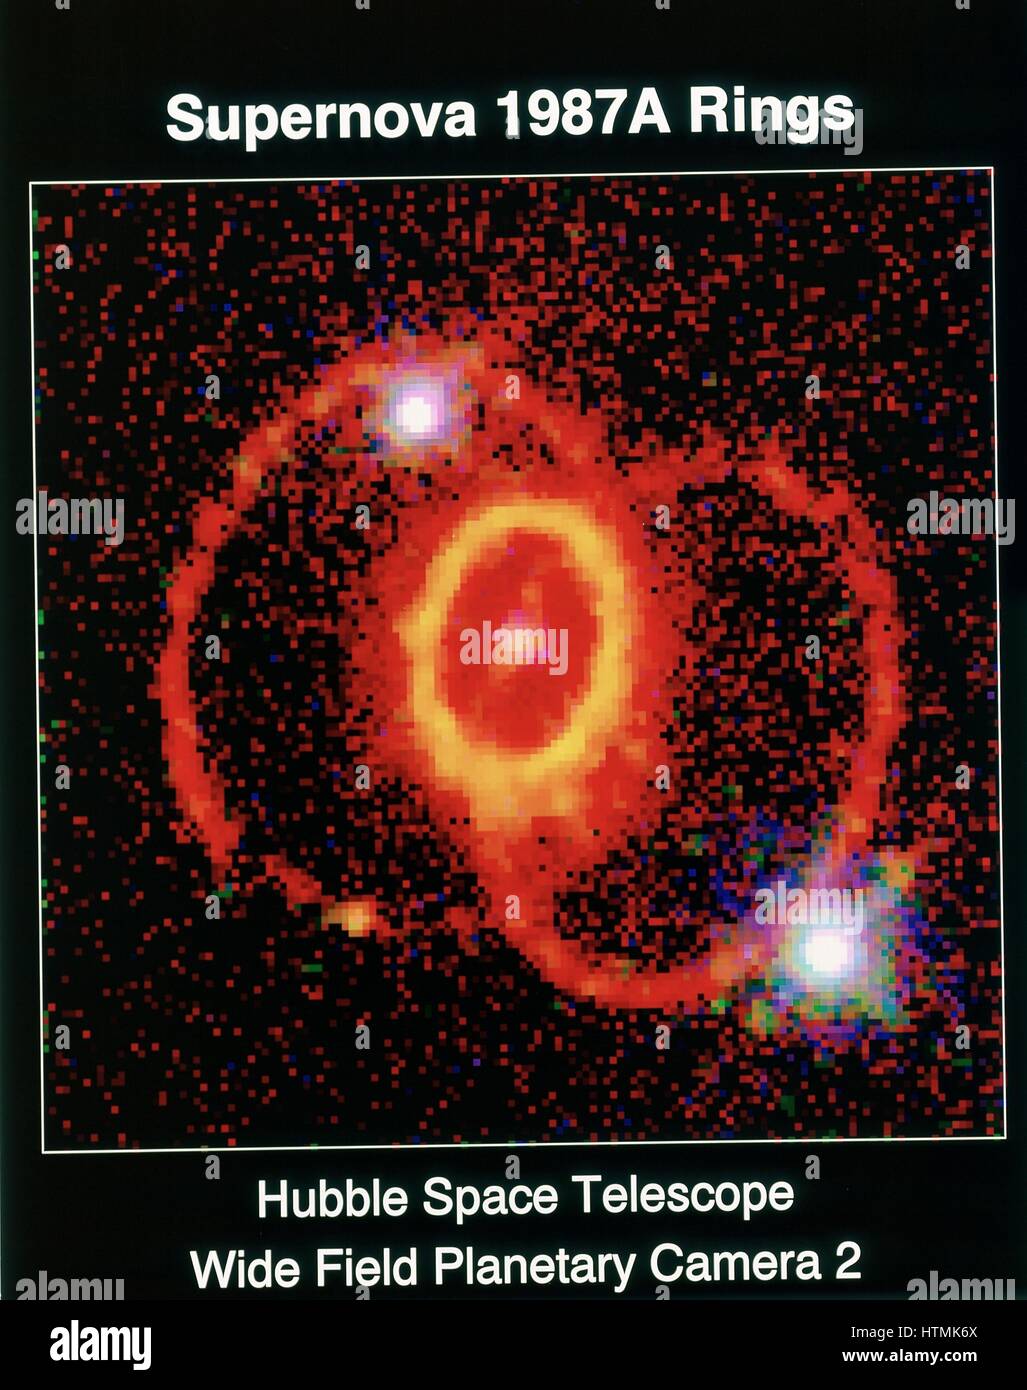 Supernova 19MI87A osservata con il telescopio spaziale Hubble, ampio campo telescopio planetario 2. Fotografia della NASA. Foto Stock